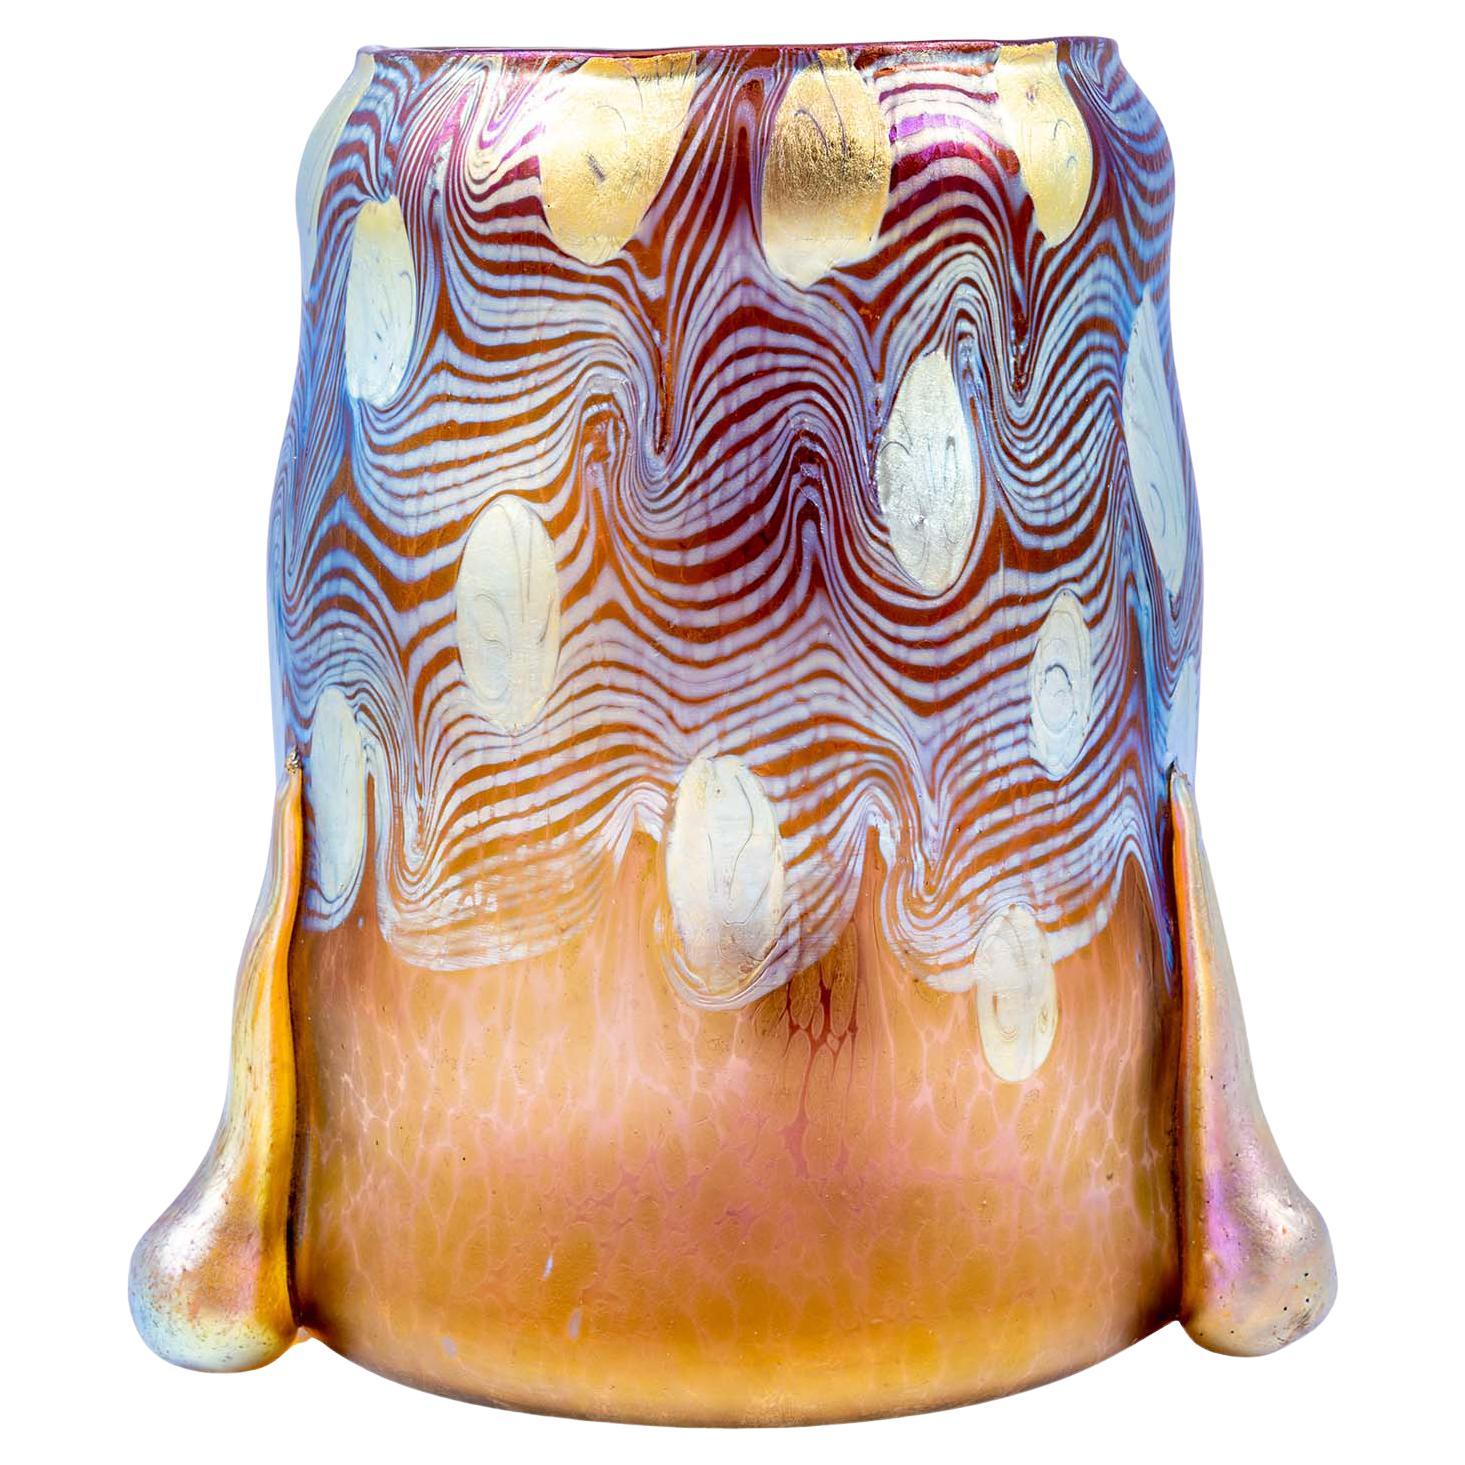 Glass Vase Loetz Argus Decoration Koloman Moser Design circa 1902 Jugendstil 